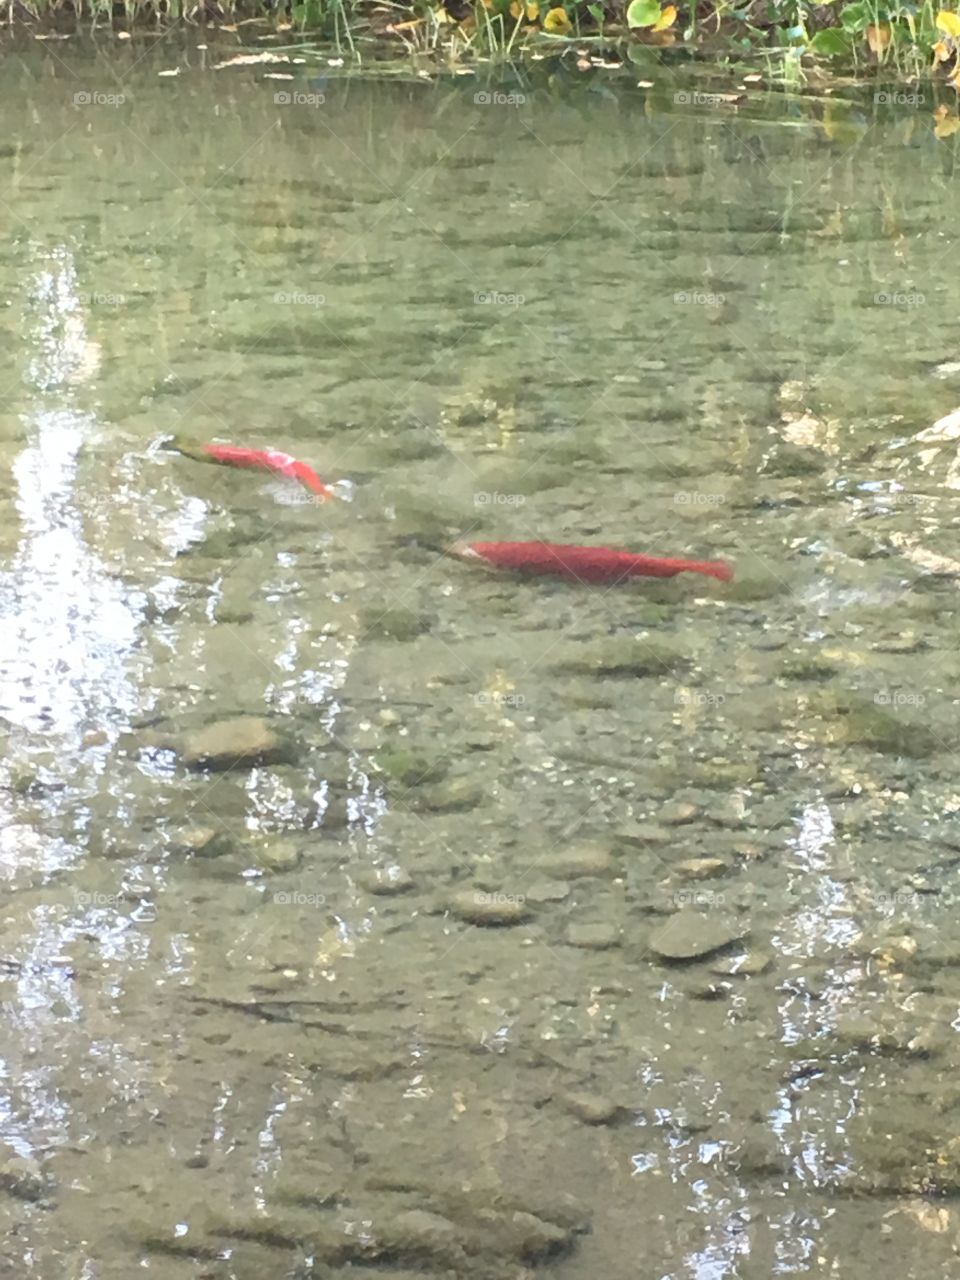 Salmon spawning 